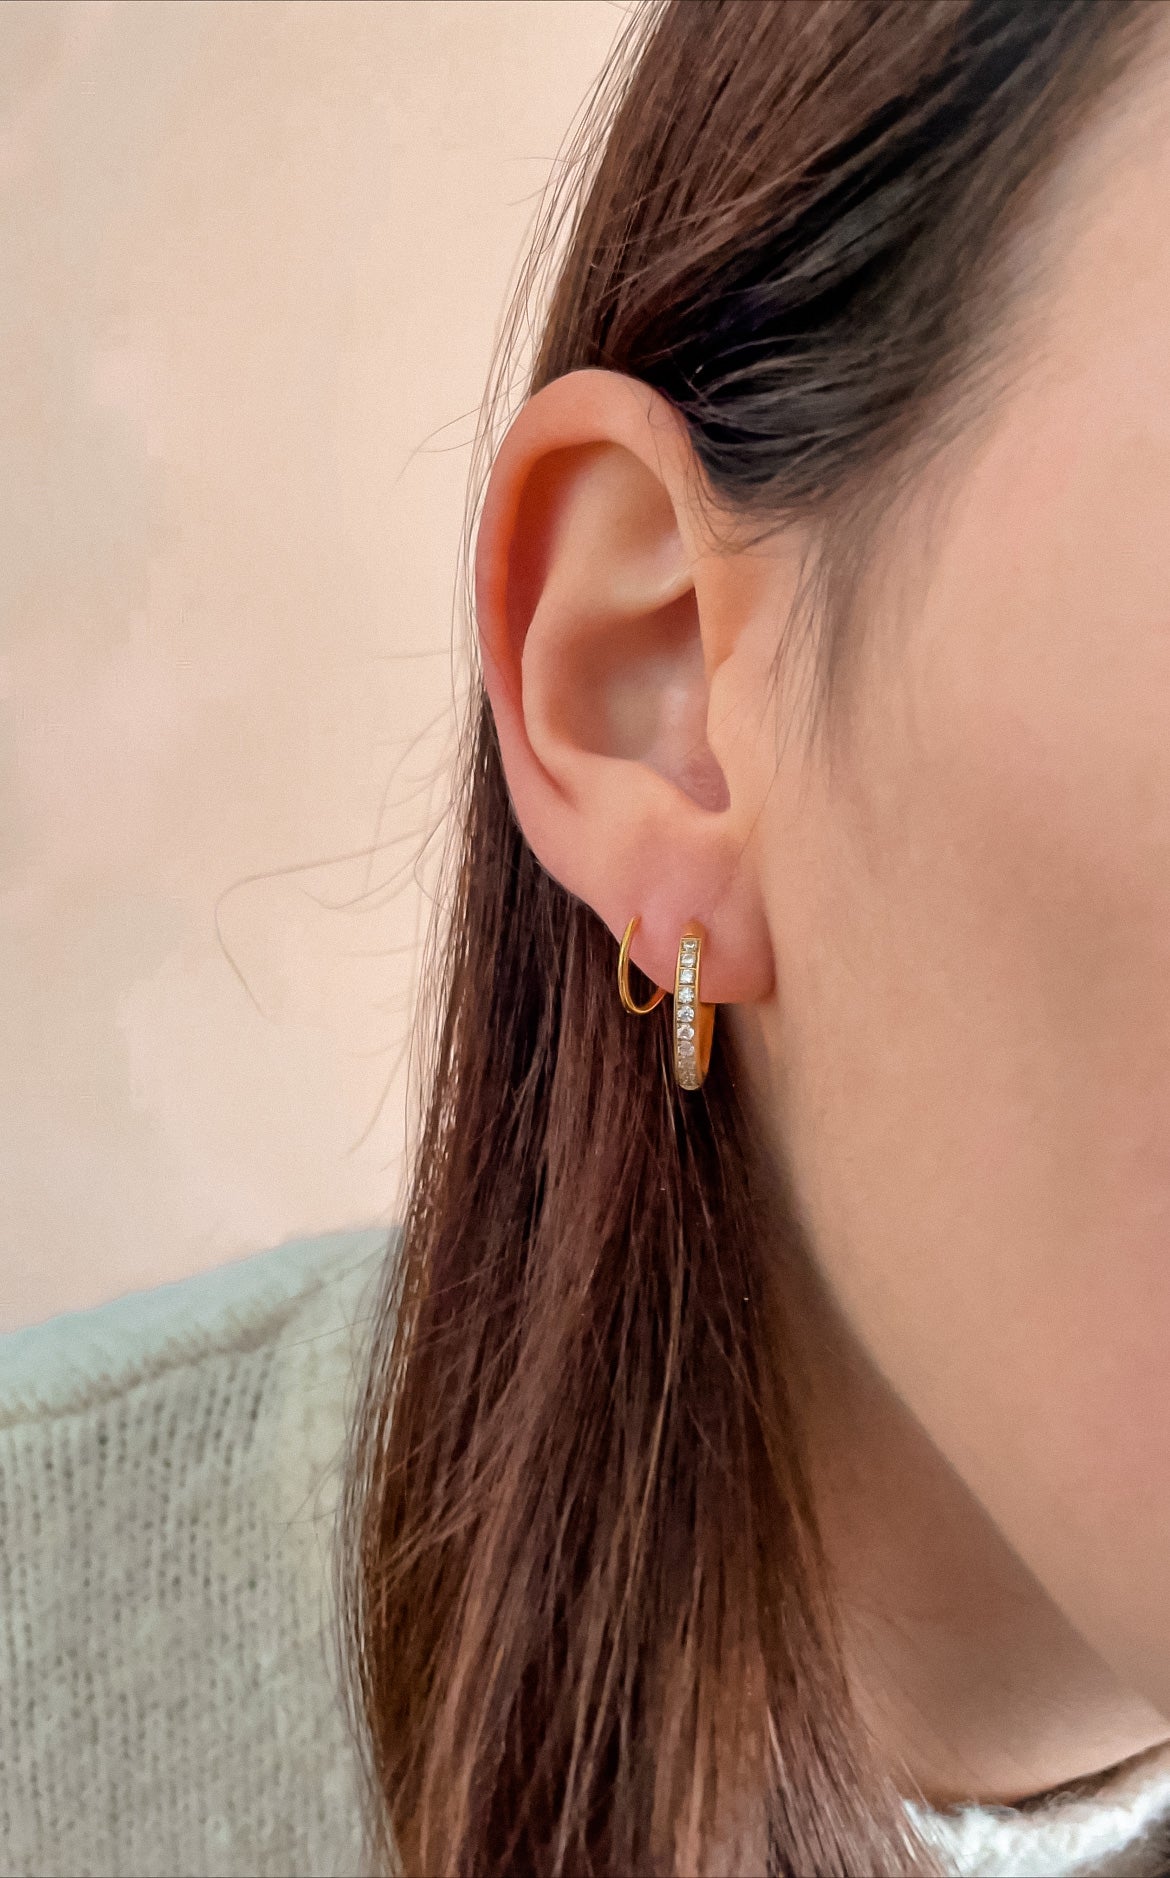 Nancy earrings